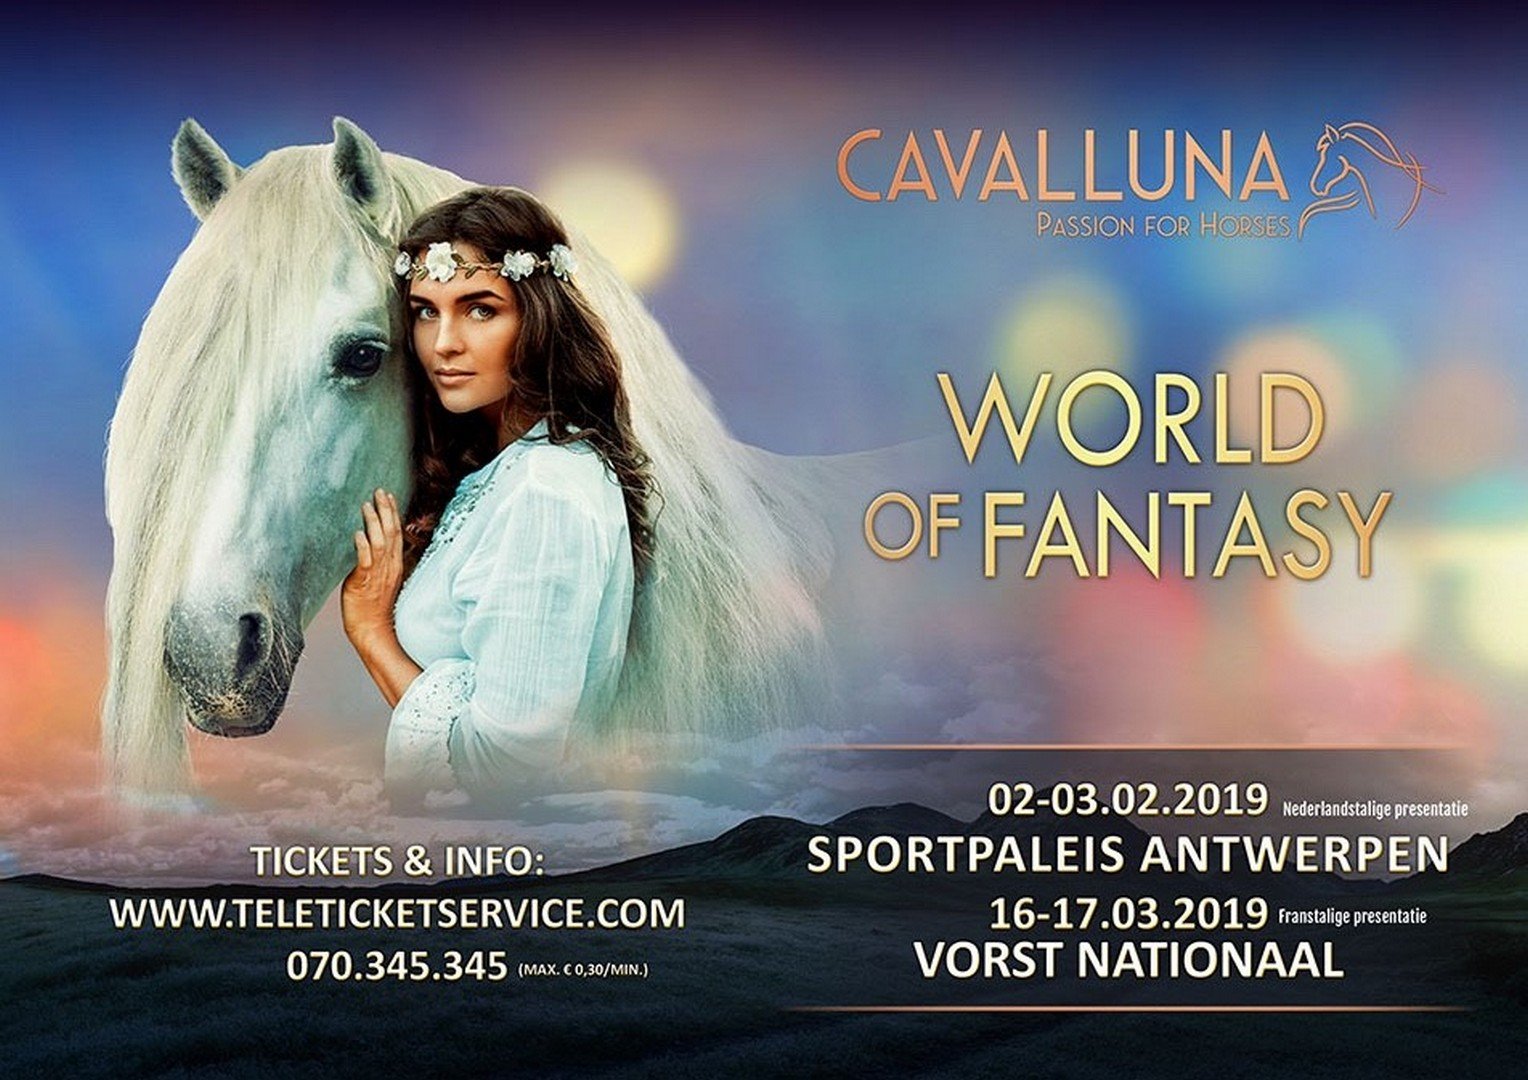 Cavalluna komt met nieuw World of Fantasy naar het Antwerps Sportpaleis en Vorst Nationaal. - Cavallunia 1